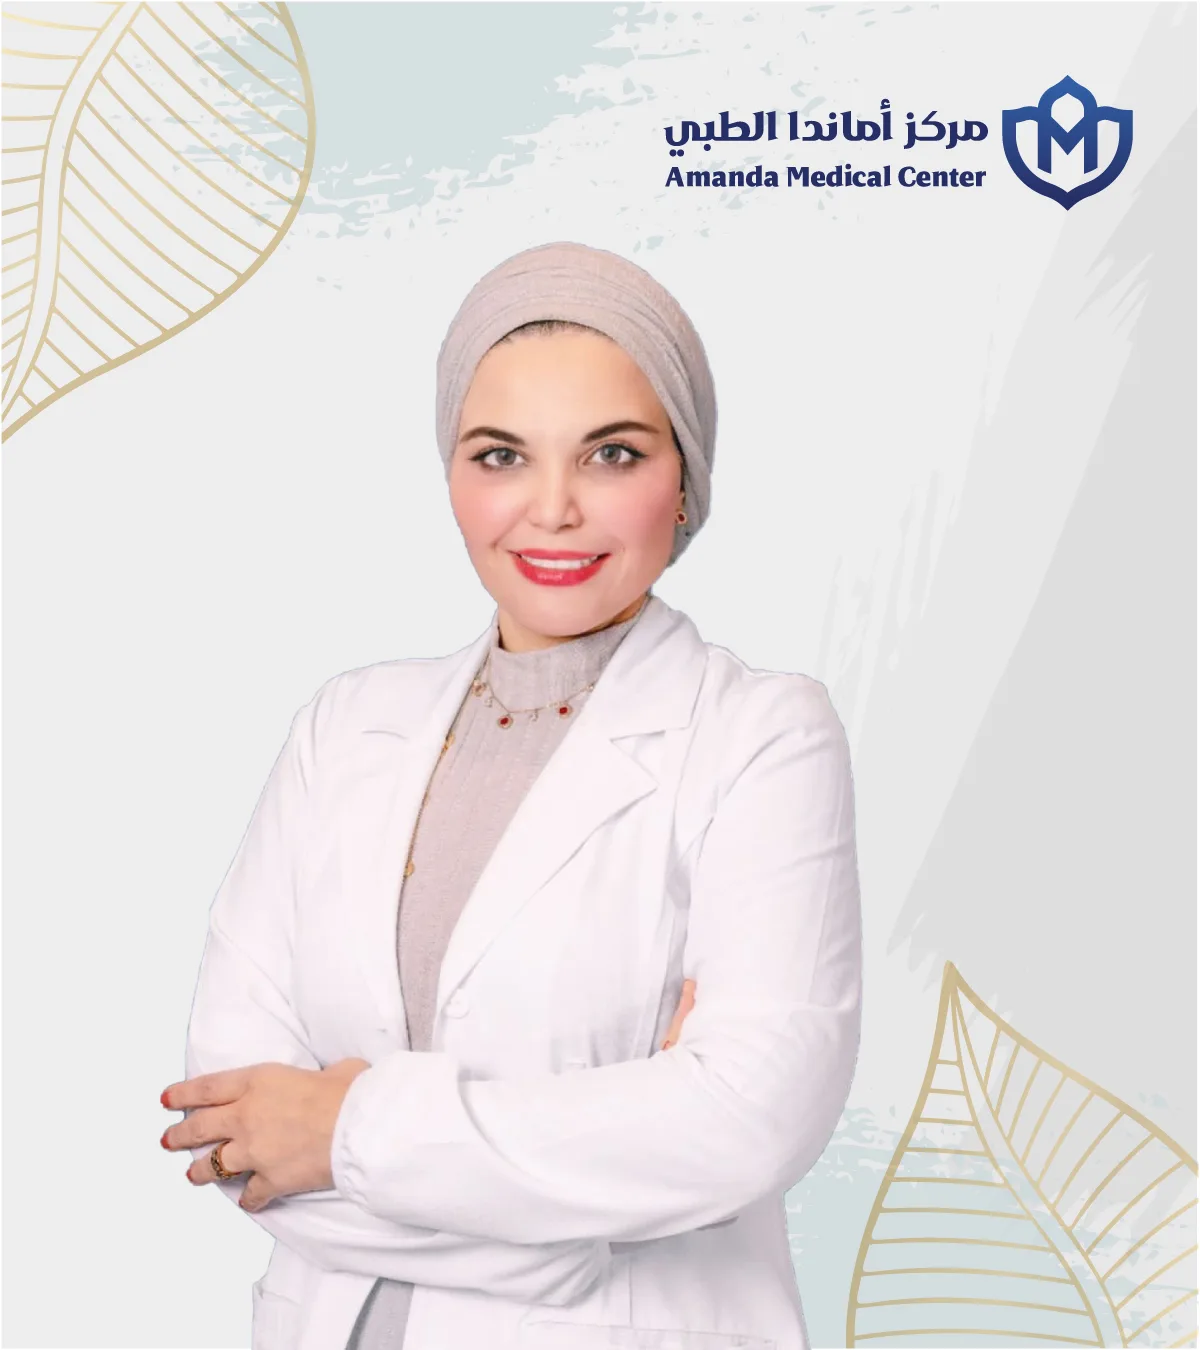 ما هي أبرز خدمات مركز أماندا الطبي في جدة؟ 